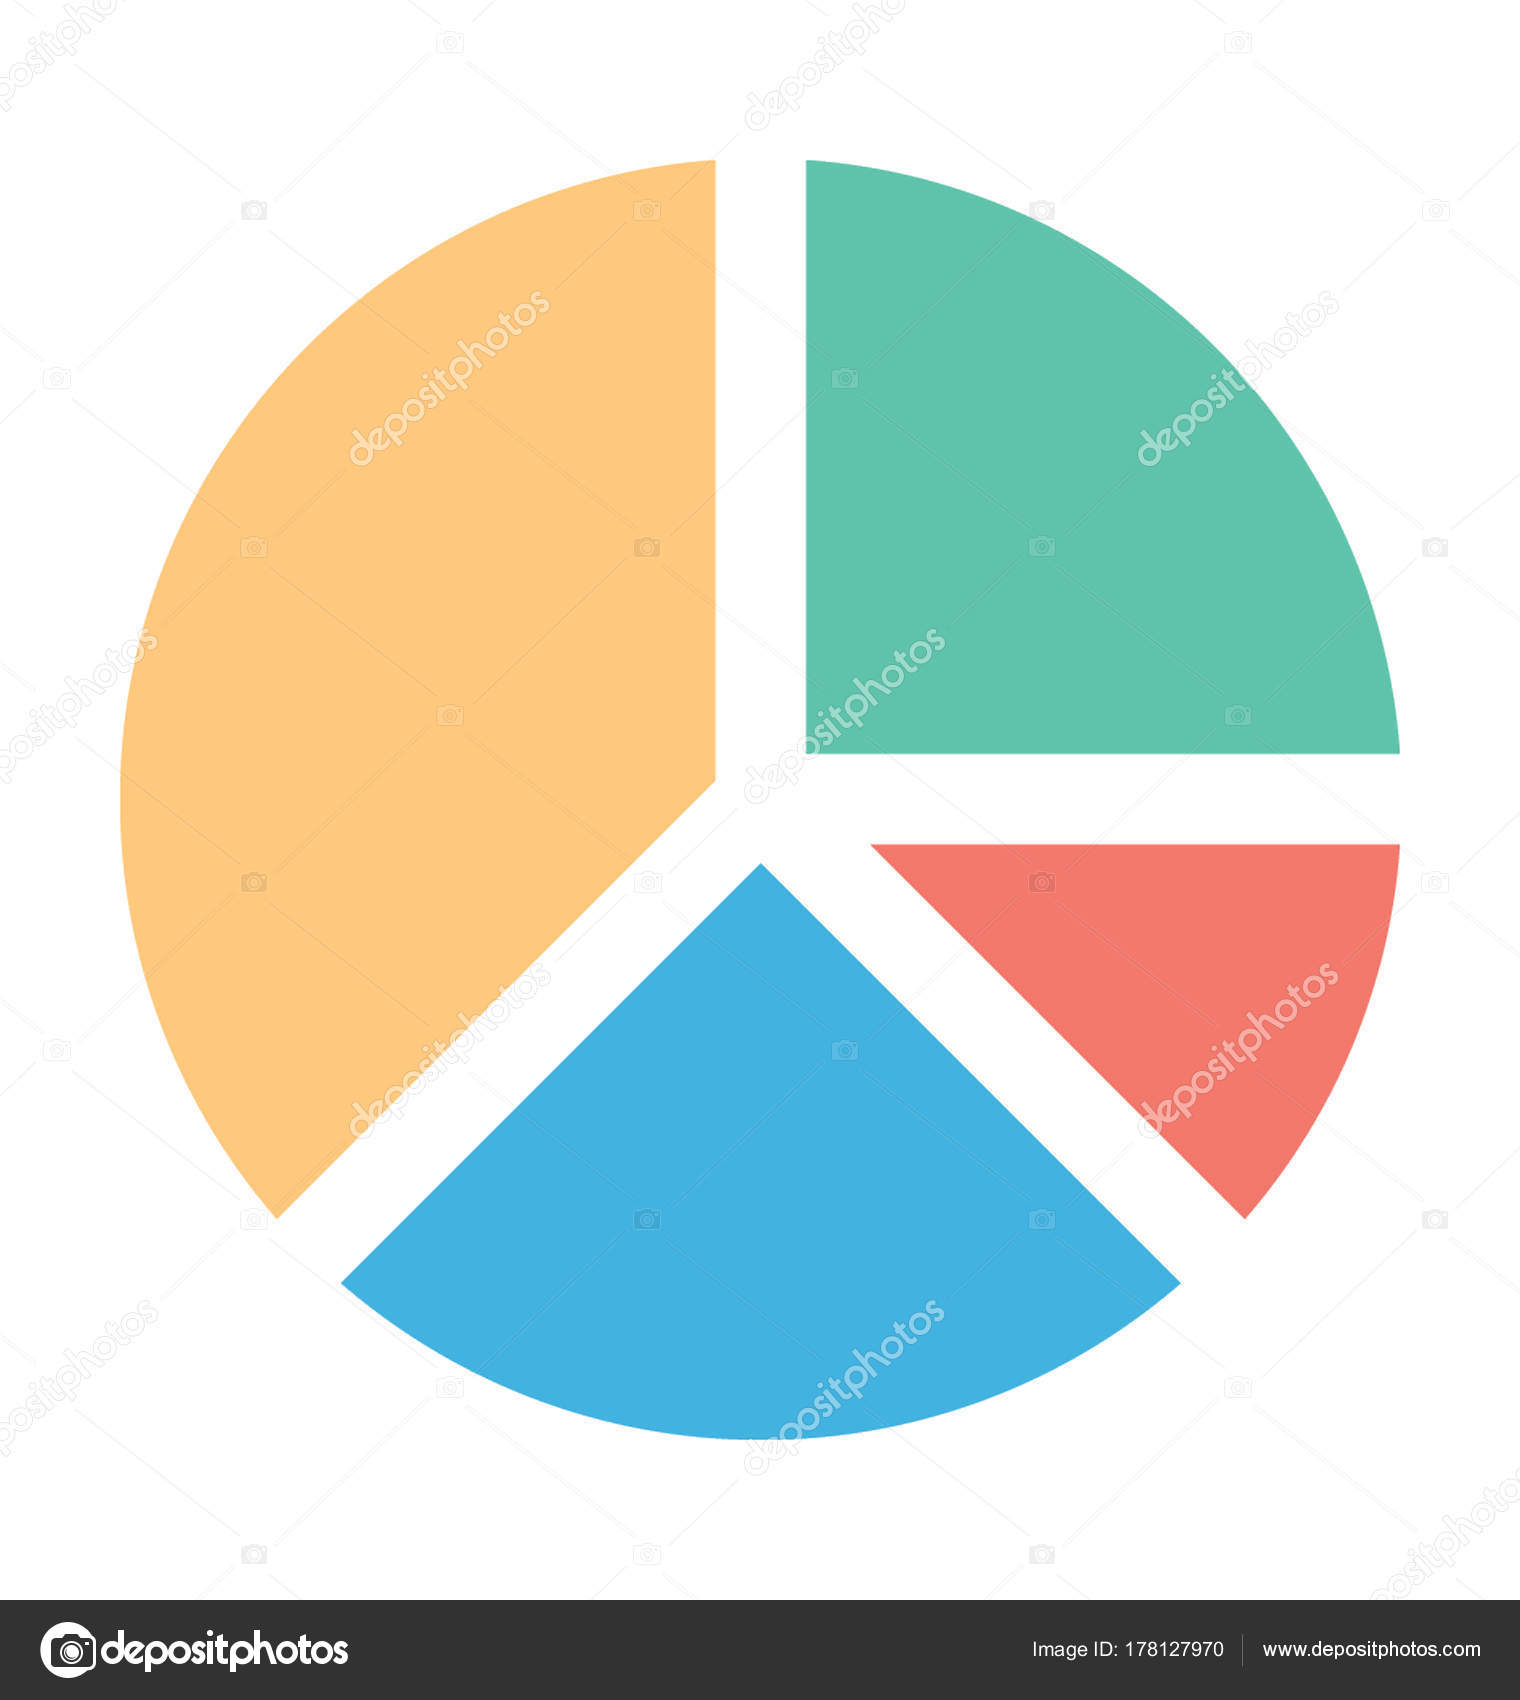 Pie Chart Vector